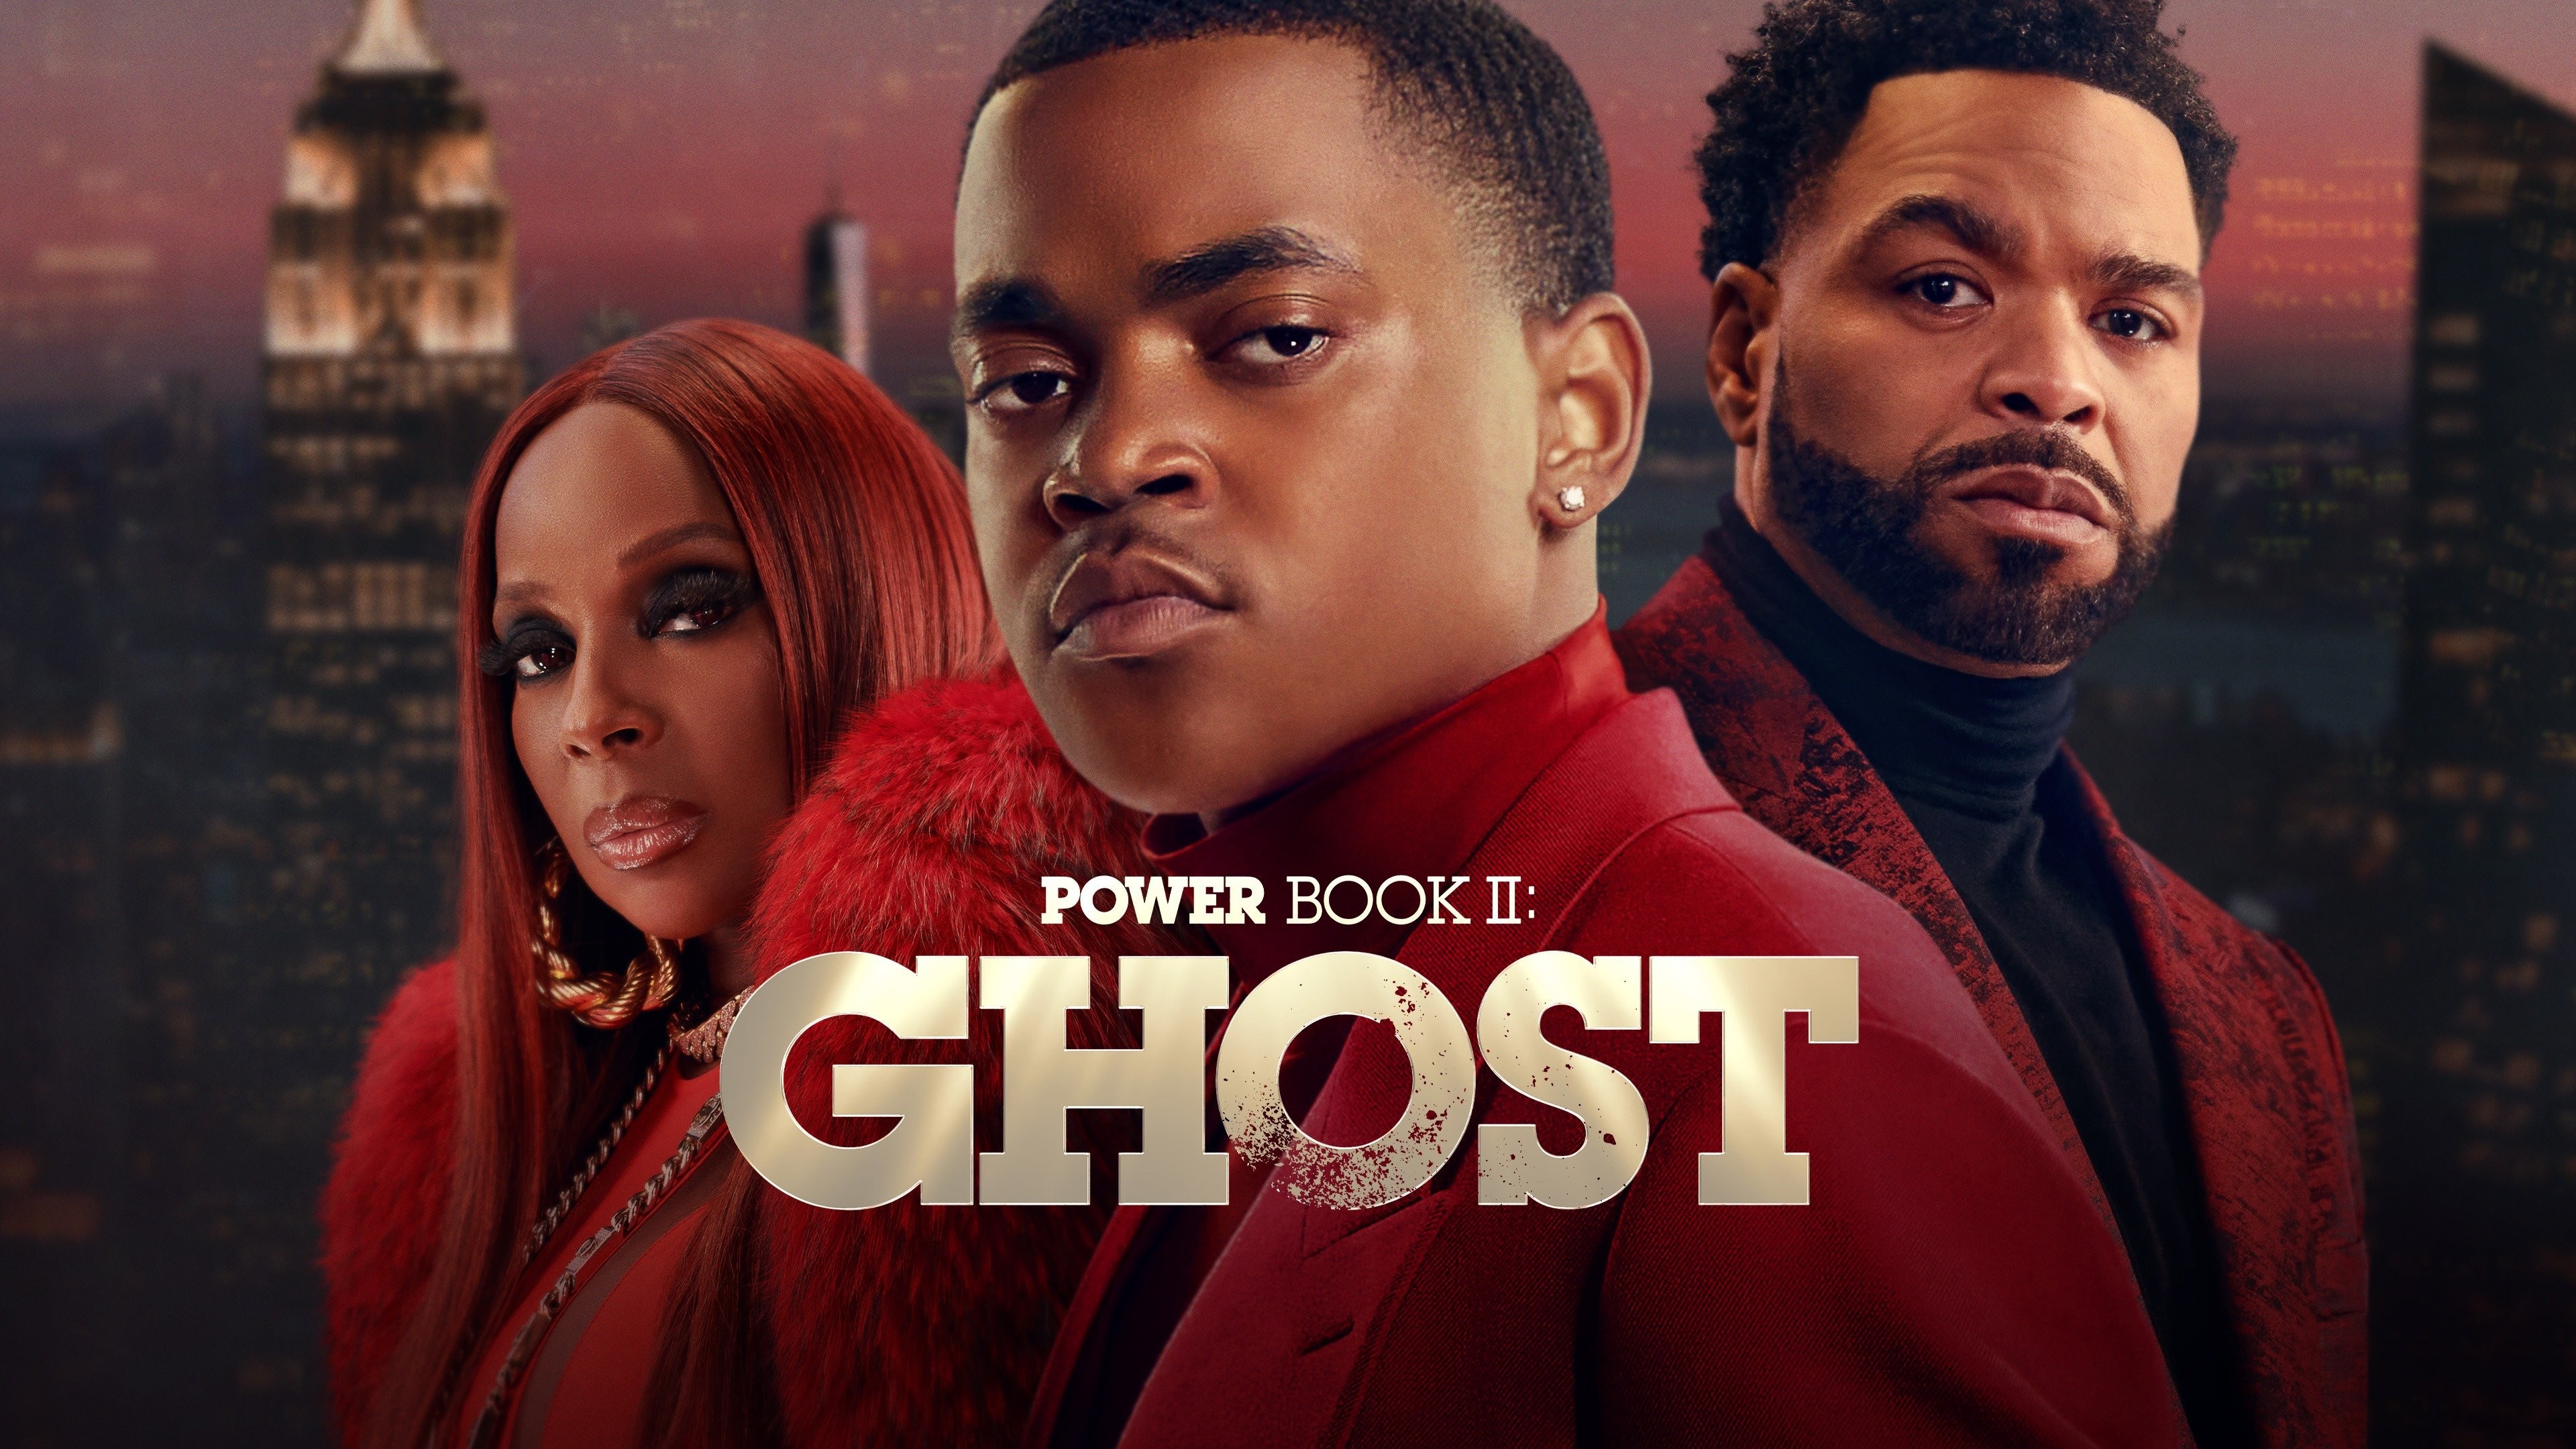 Power Book II: Ghost' Episode 6, Good vs Evil Recap